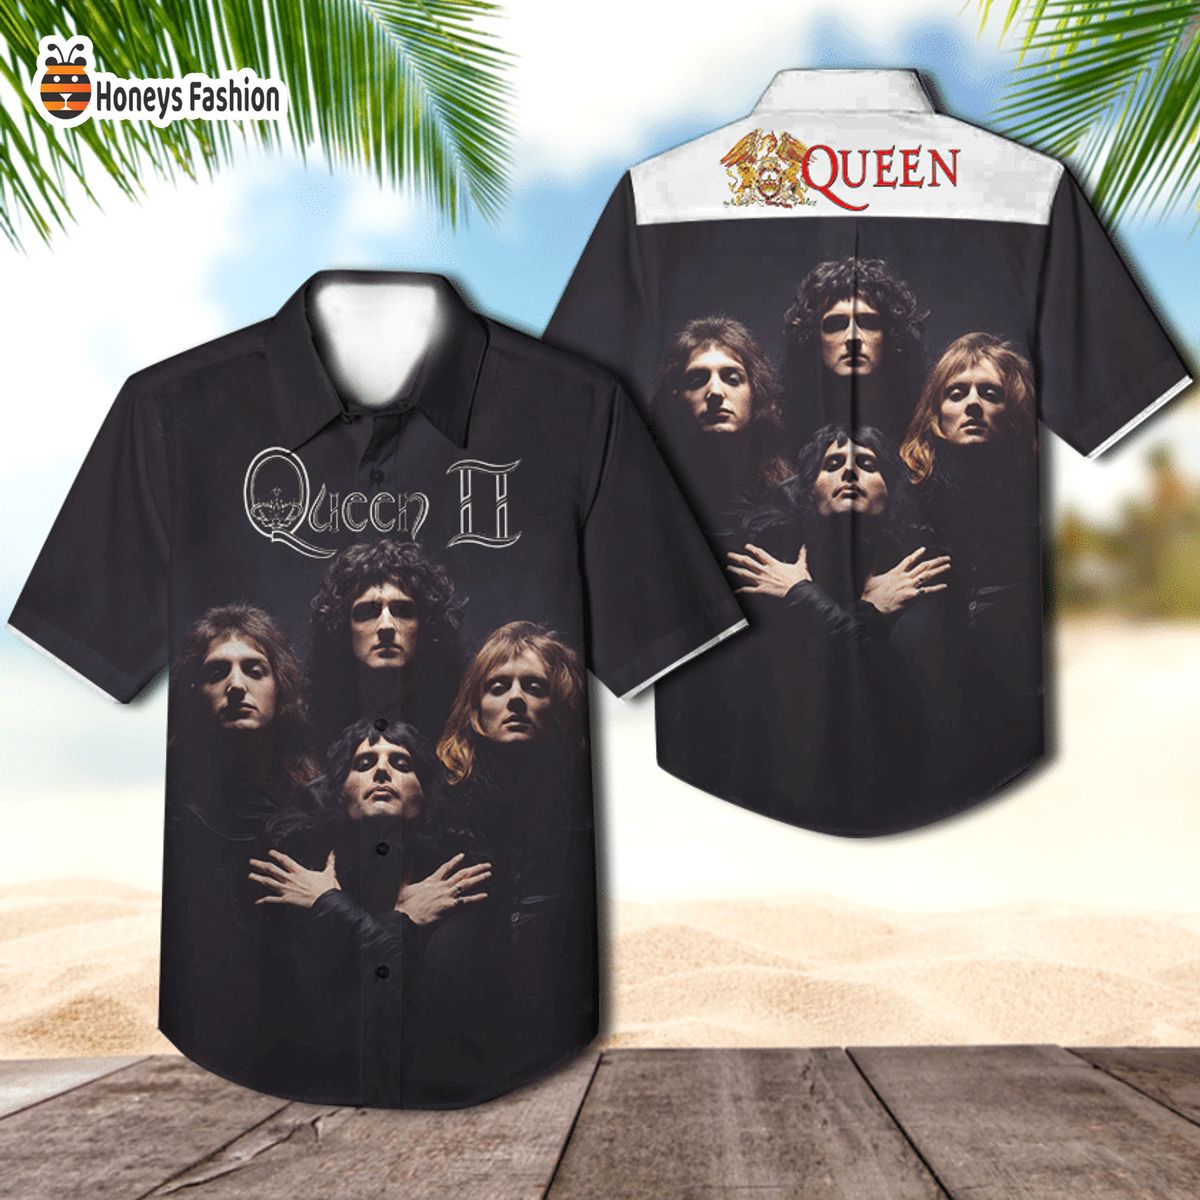 Queen band queen II album cover hawaiian shirt